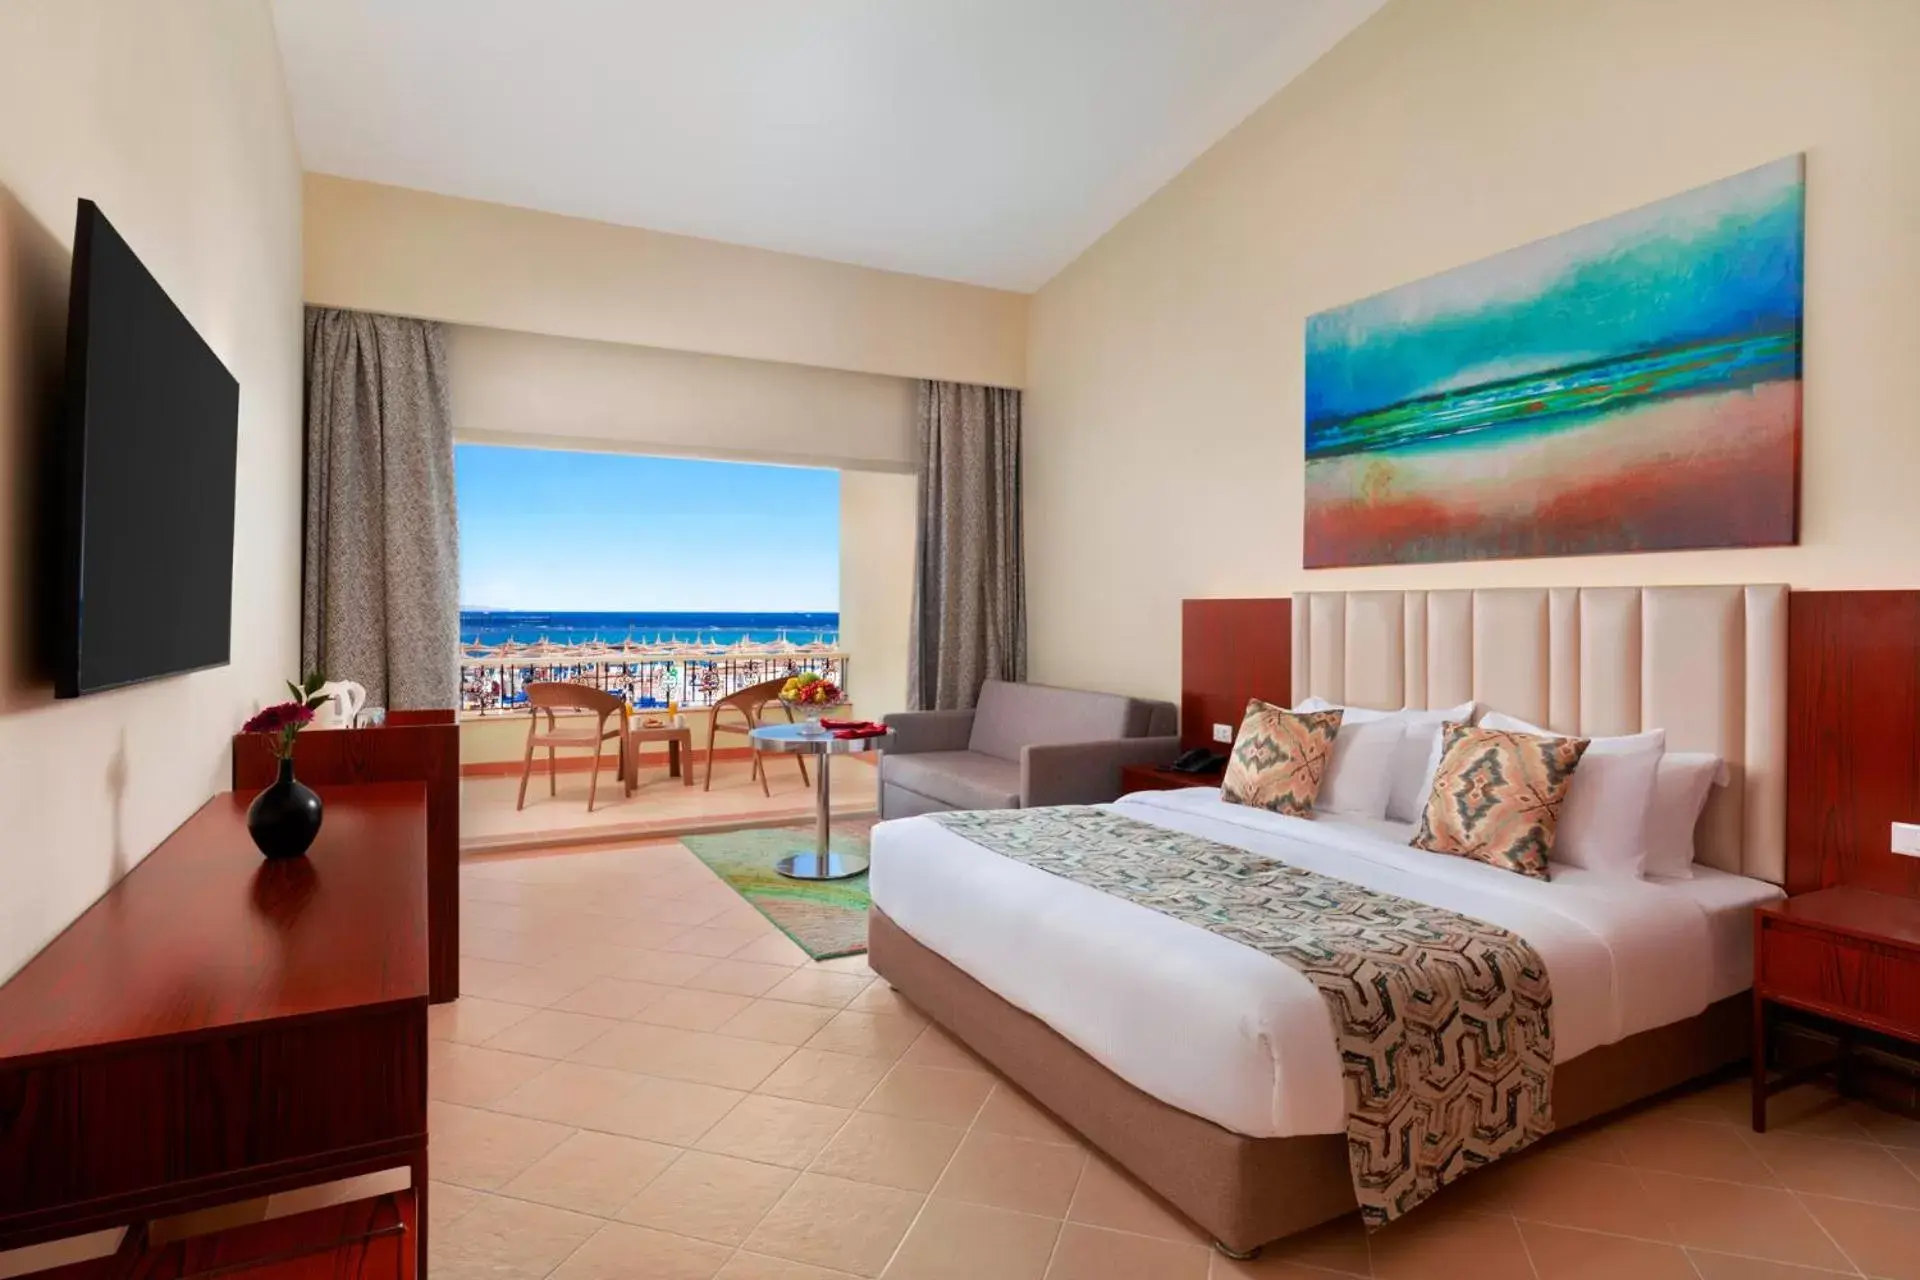 Bedroom in Pickalbatros Dana Beach Resort - Hurghada